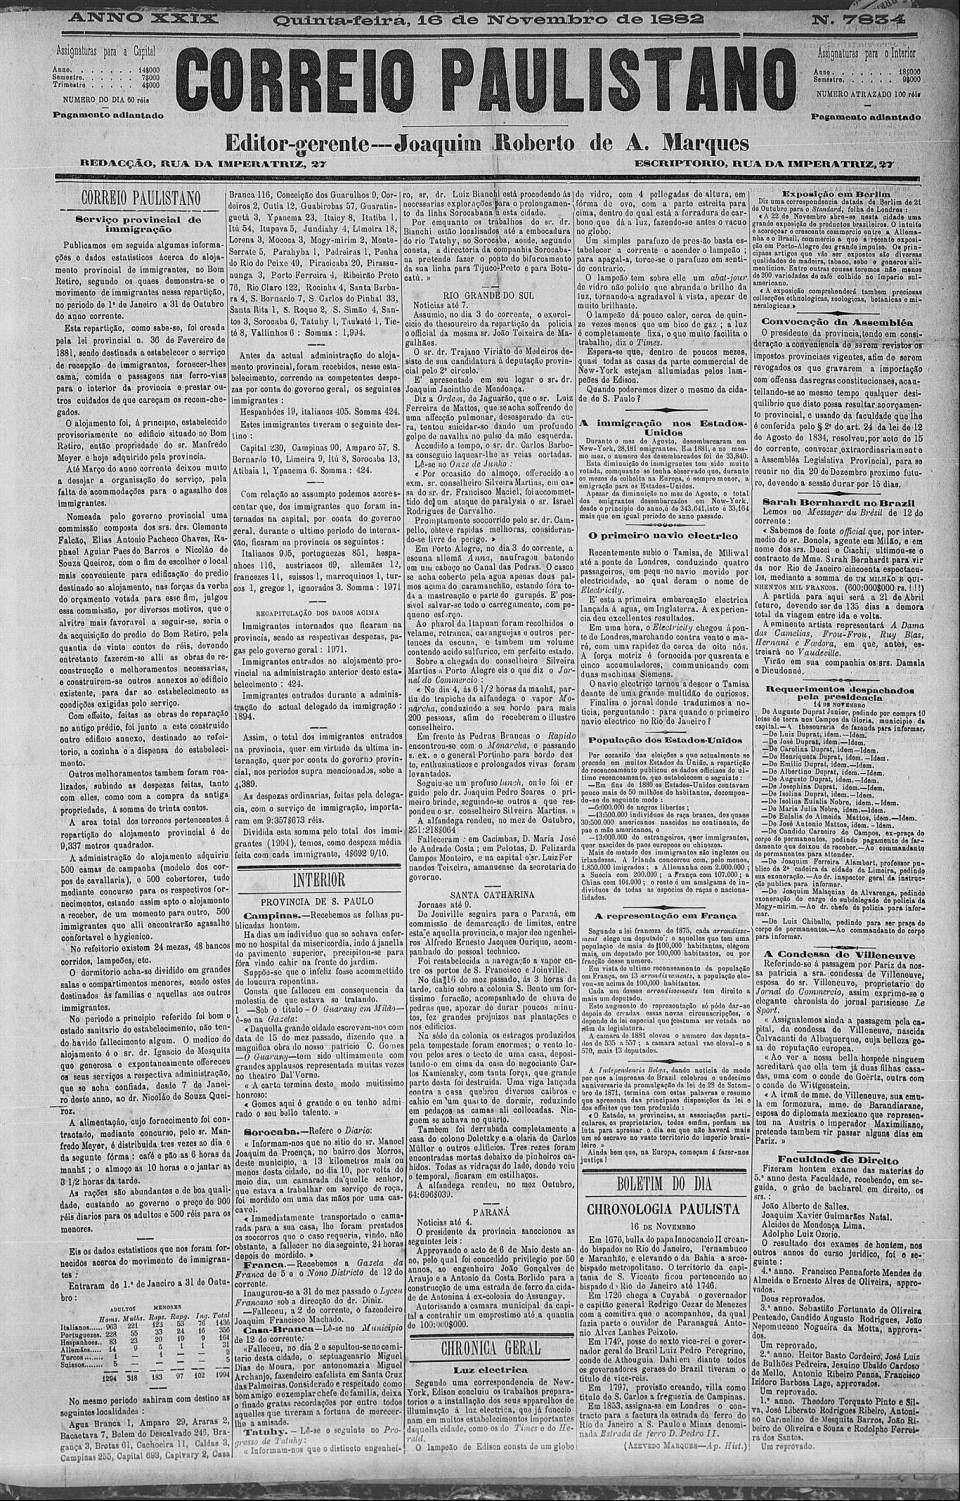 art-hospedaria-do-bom-retiro-instalacoes-correio-paulistano-16-nov-1882-folha